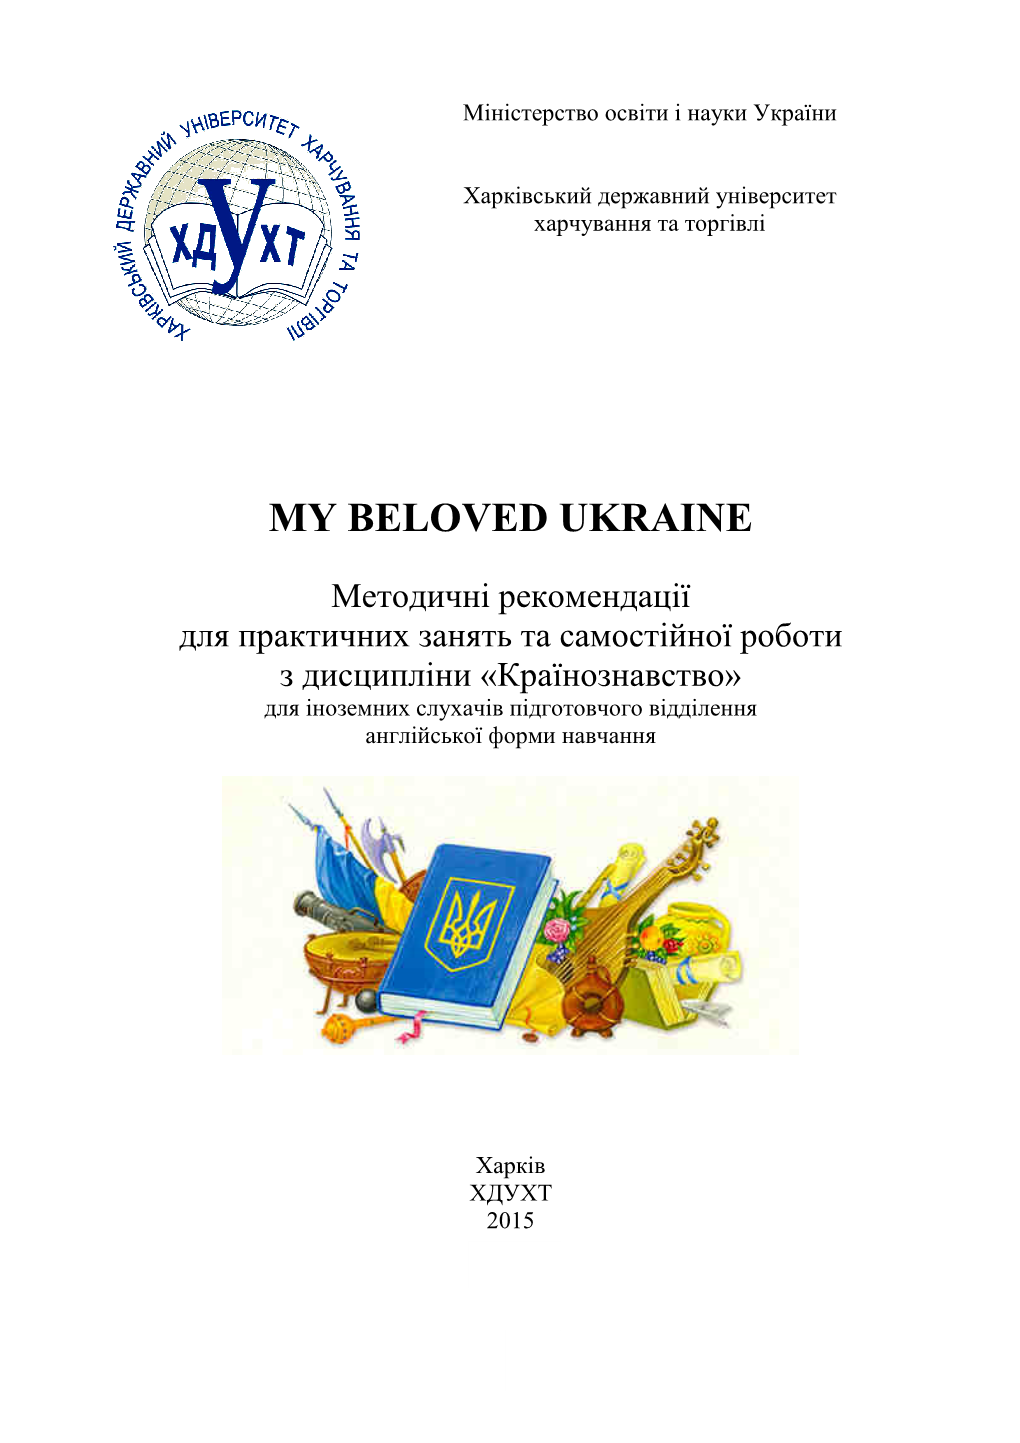 My Beloved Ukraine